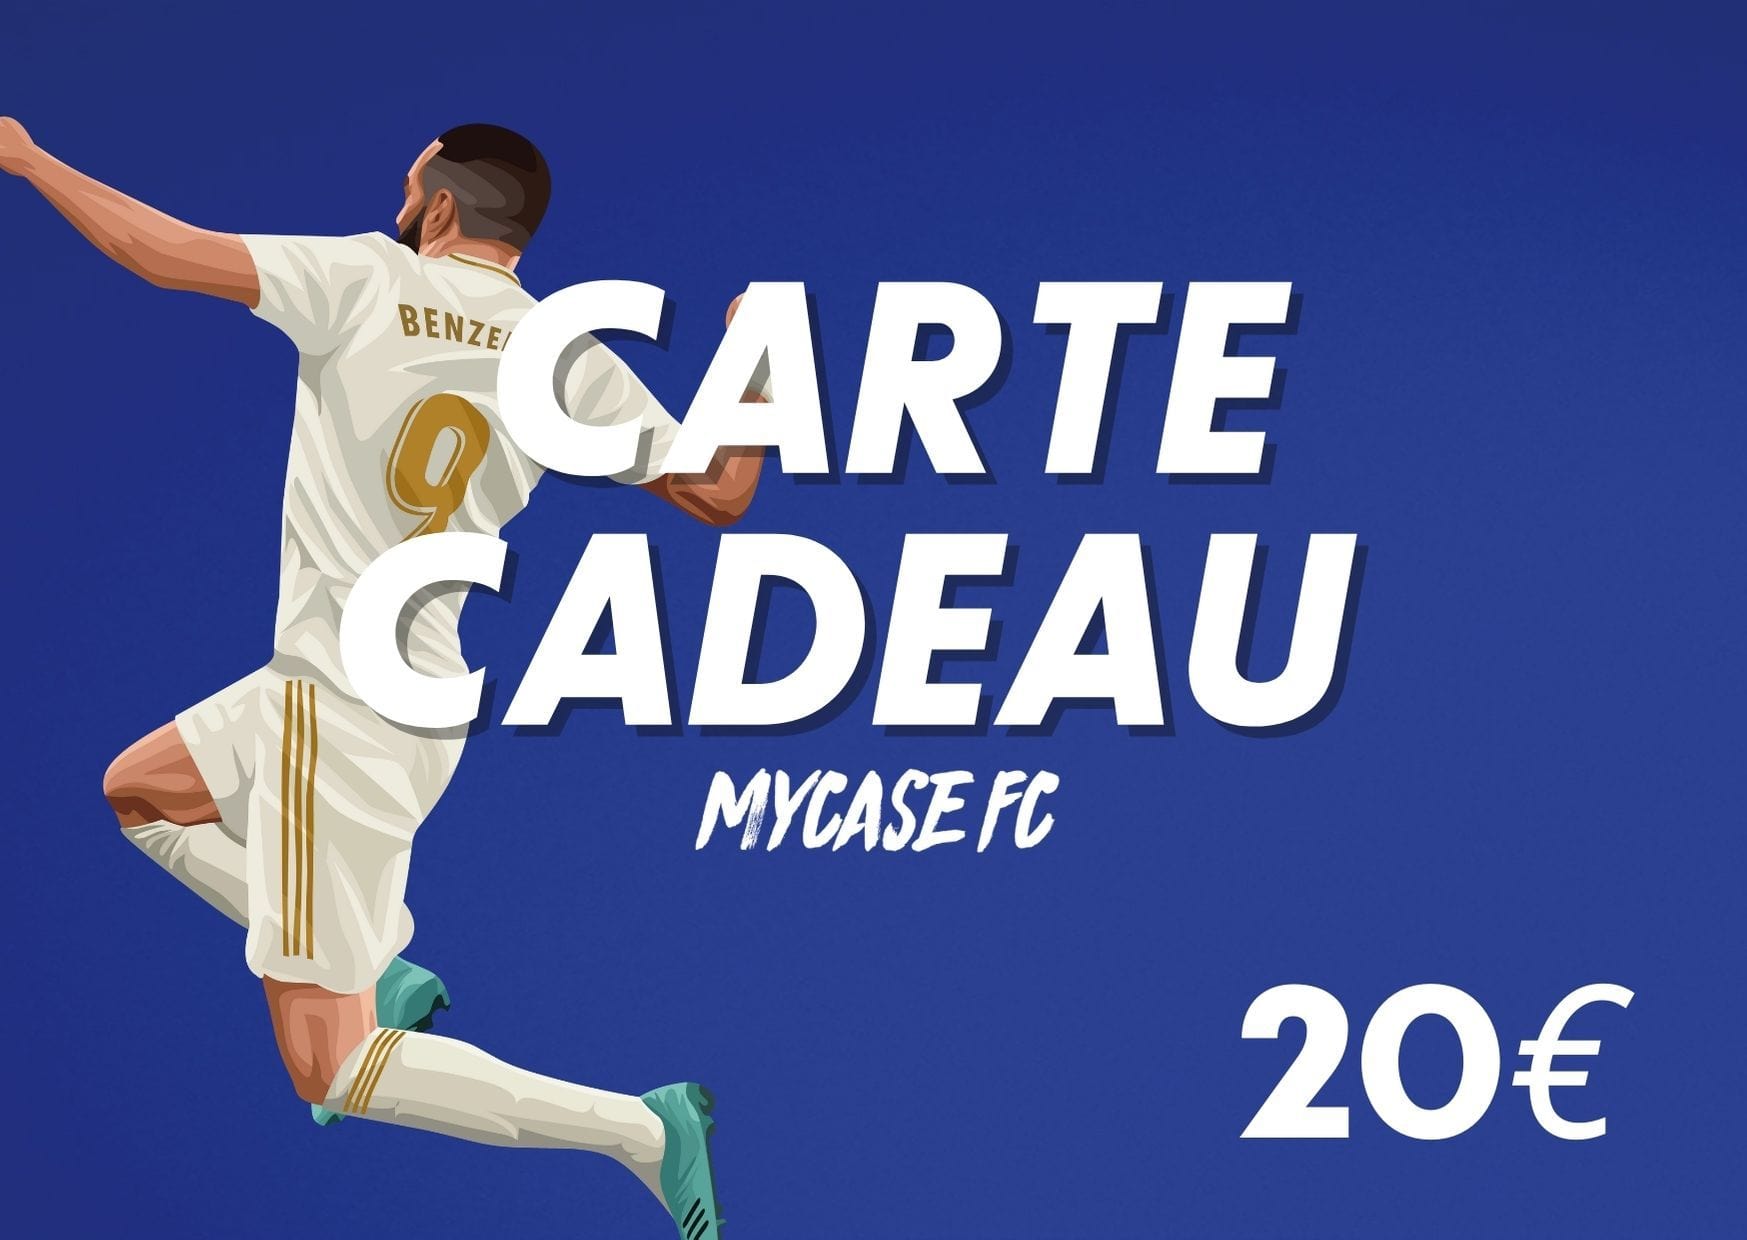 CARTE CADEAU 20€ - MYCASE FC